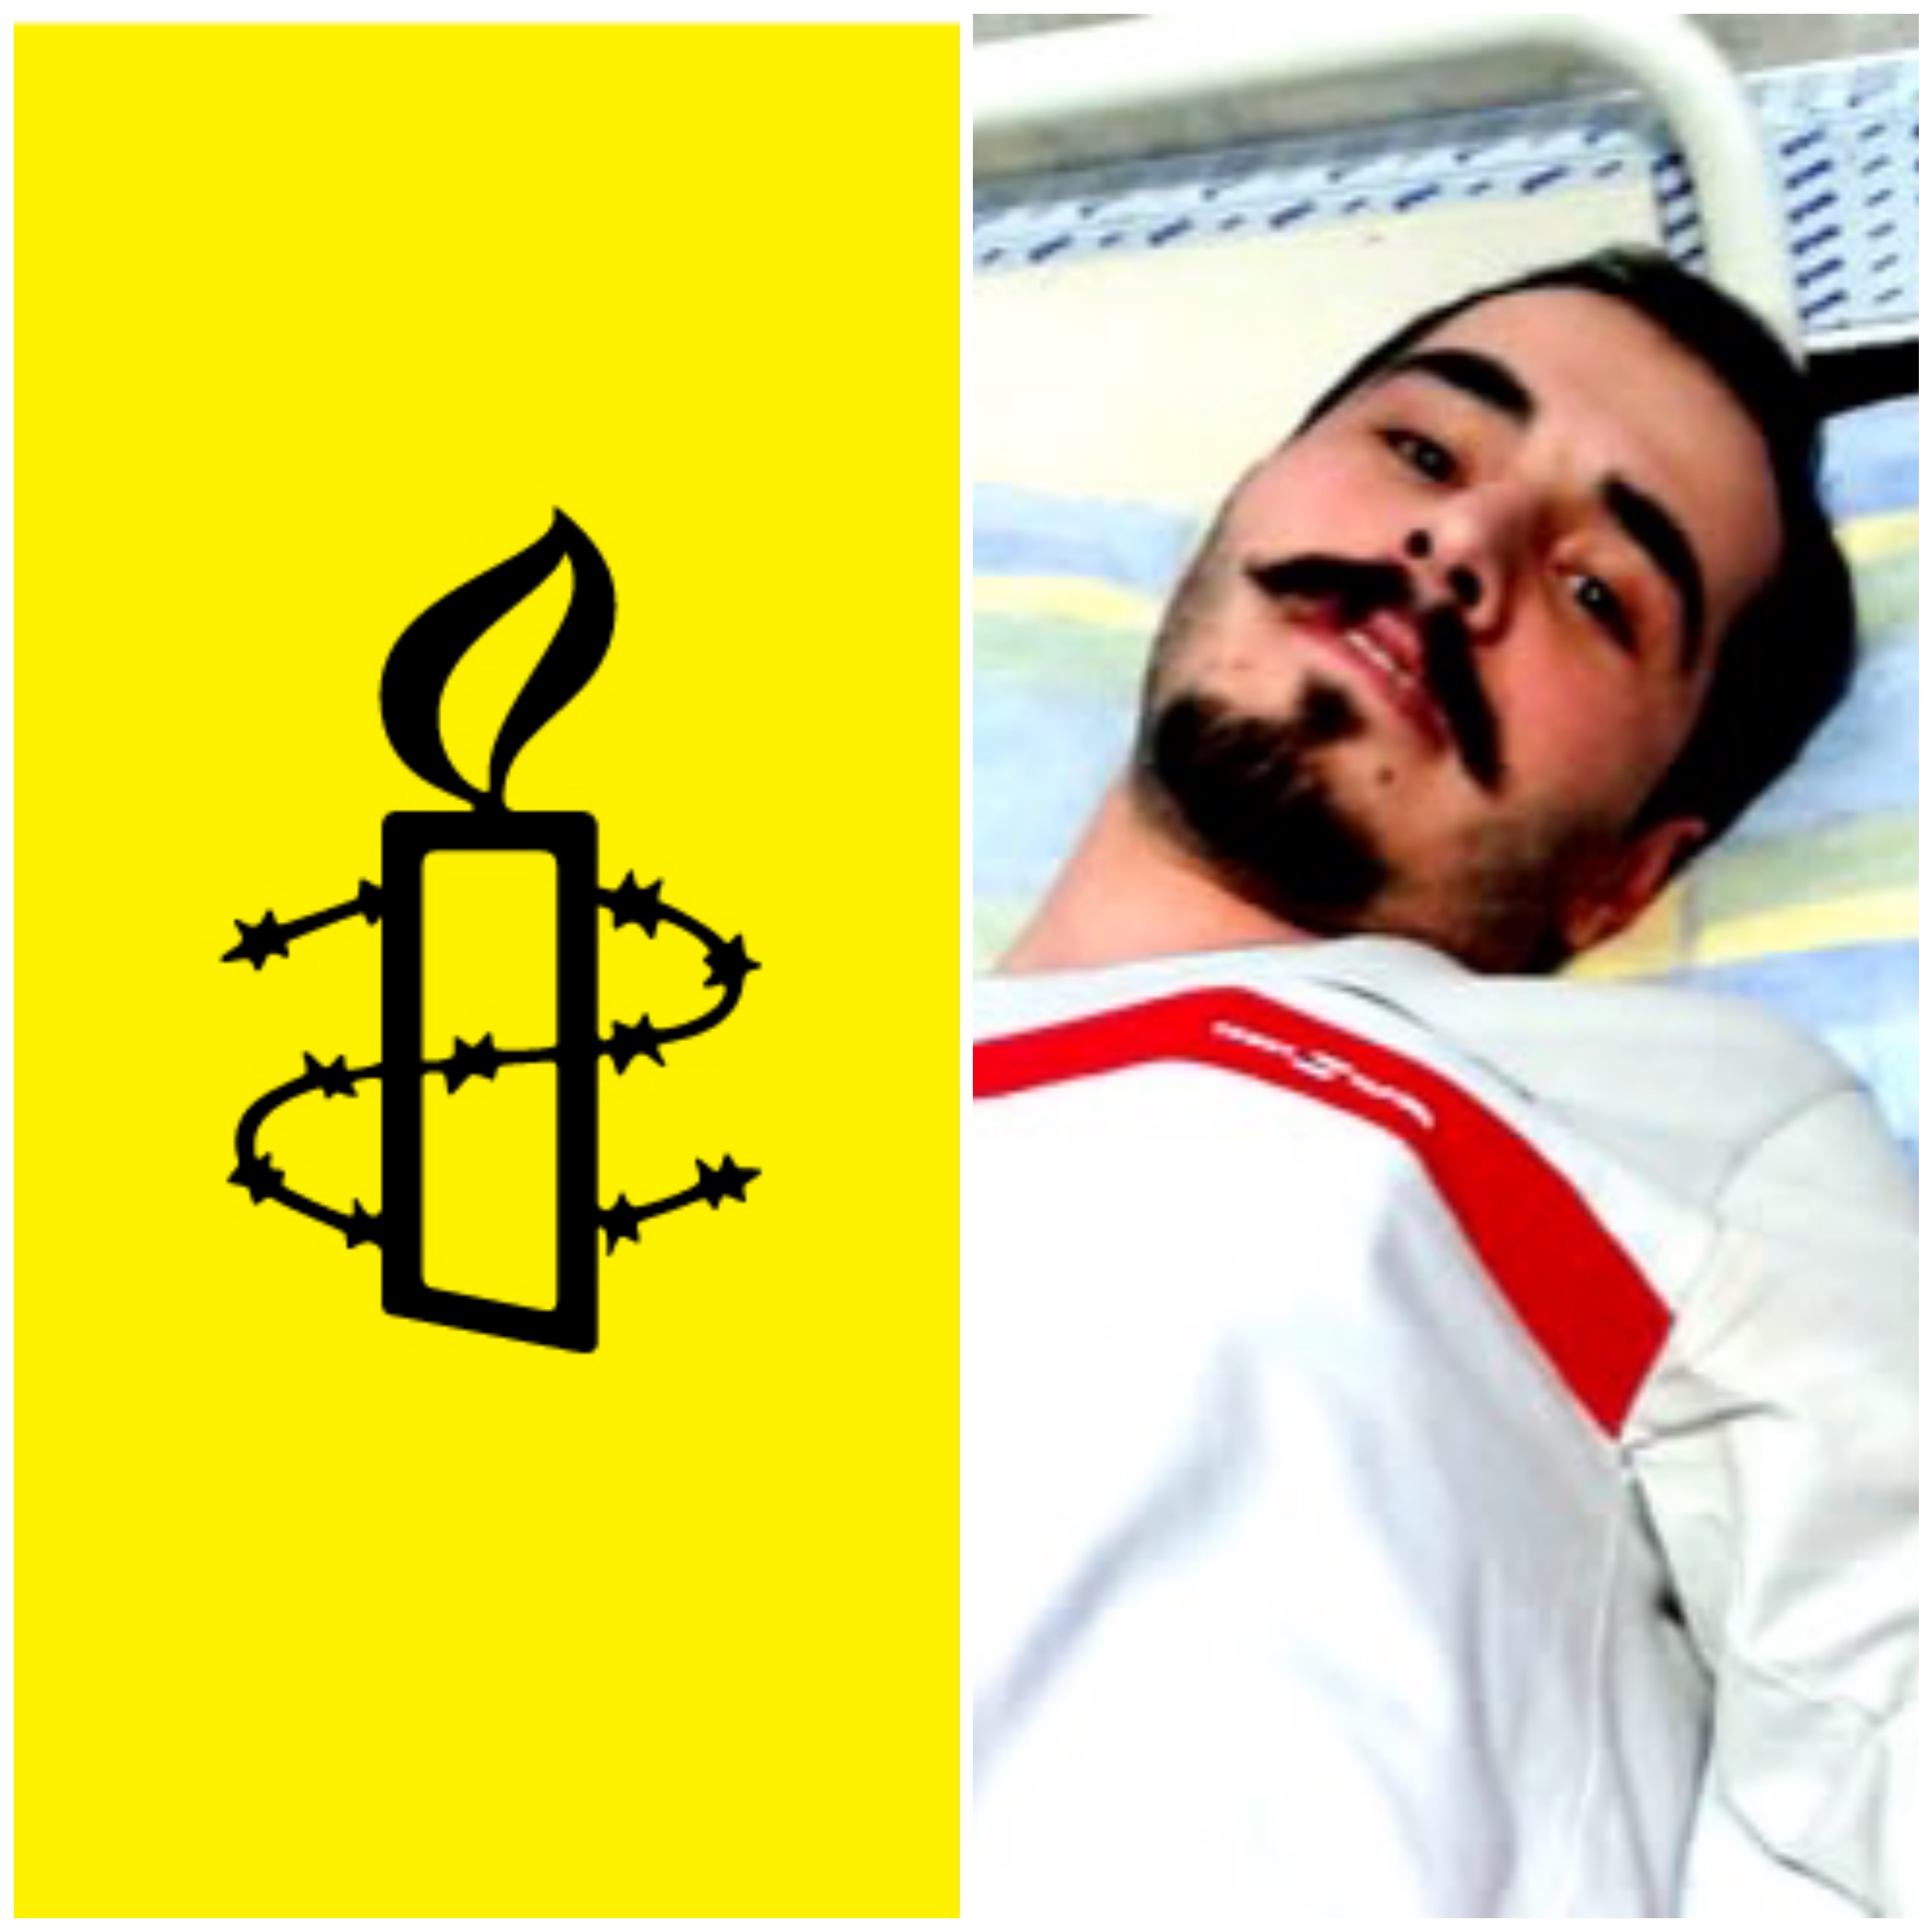 عفو بین الملل خواستار اقدام فوری در مورد وضعیت حسین رونقی ملکی شد